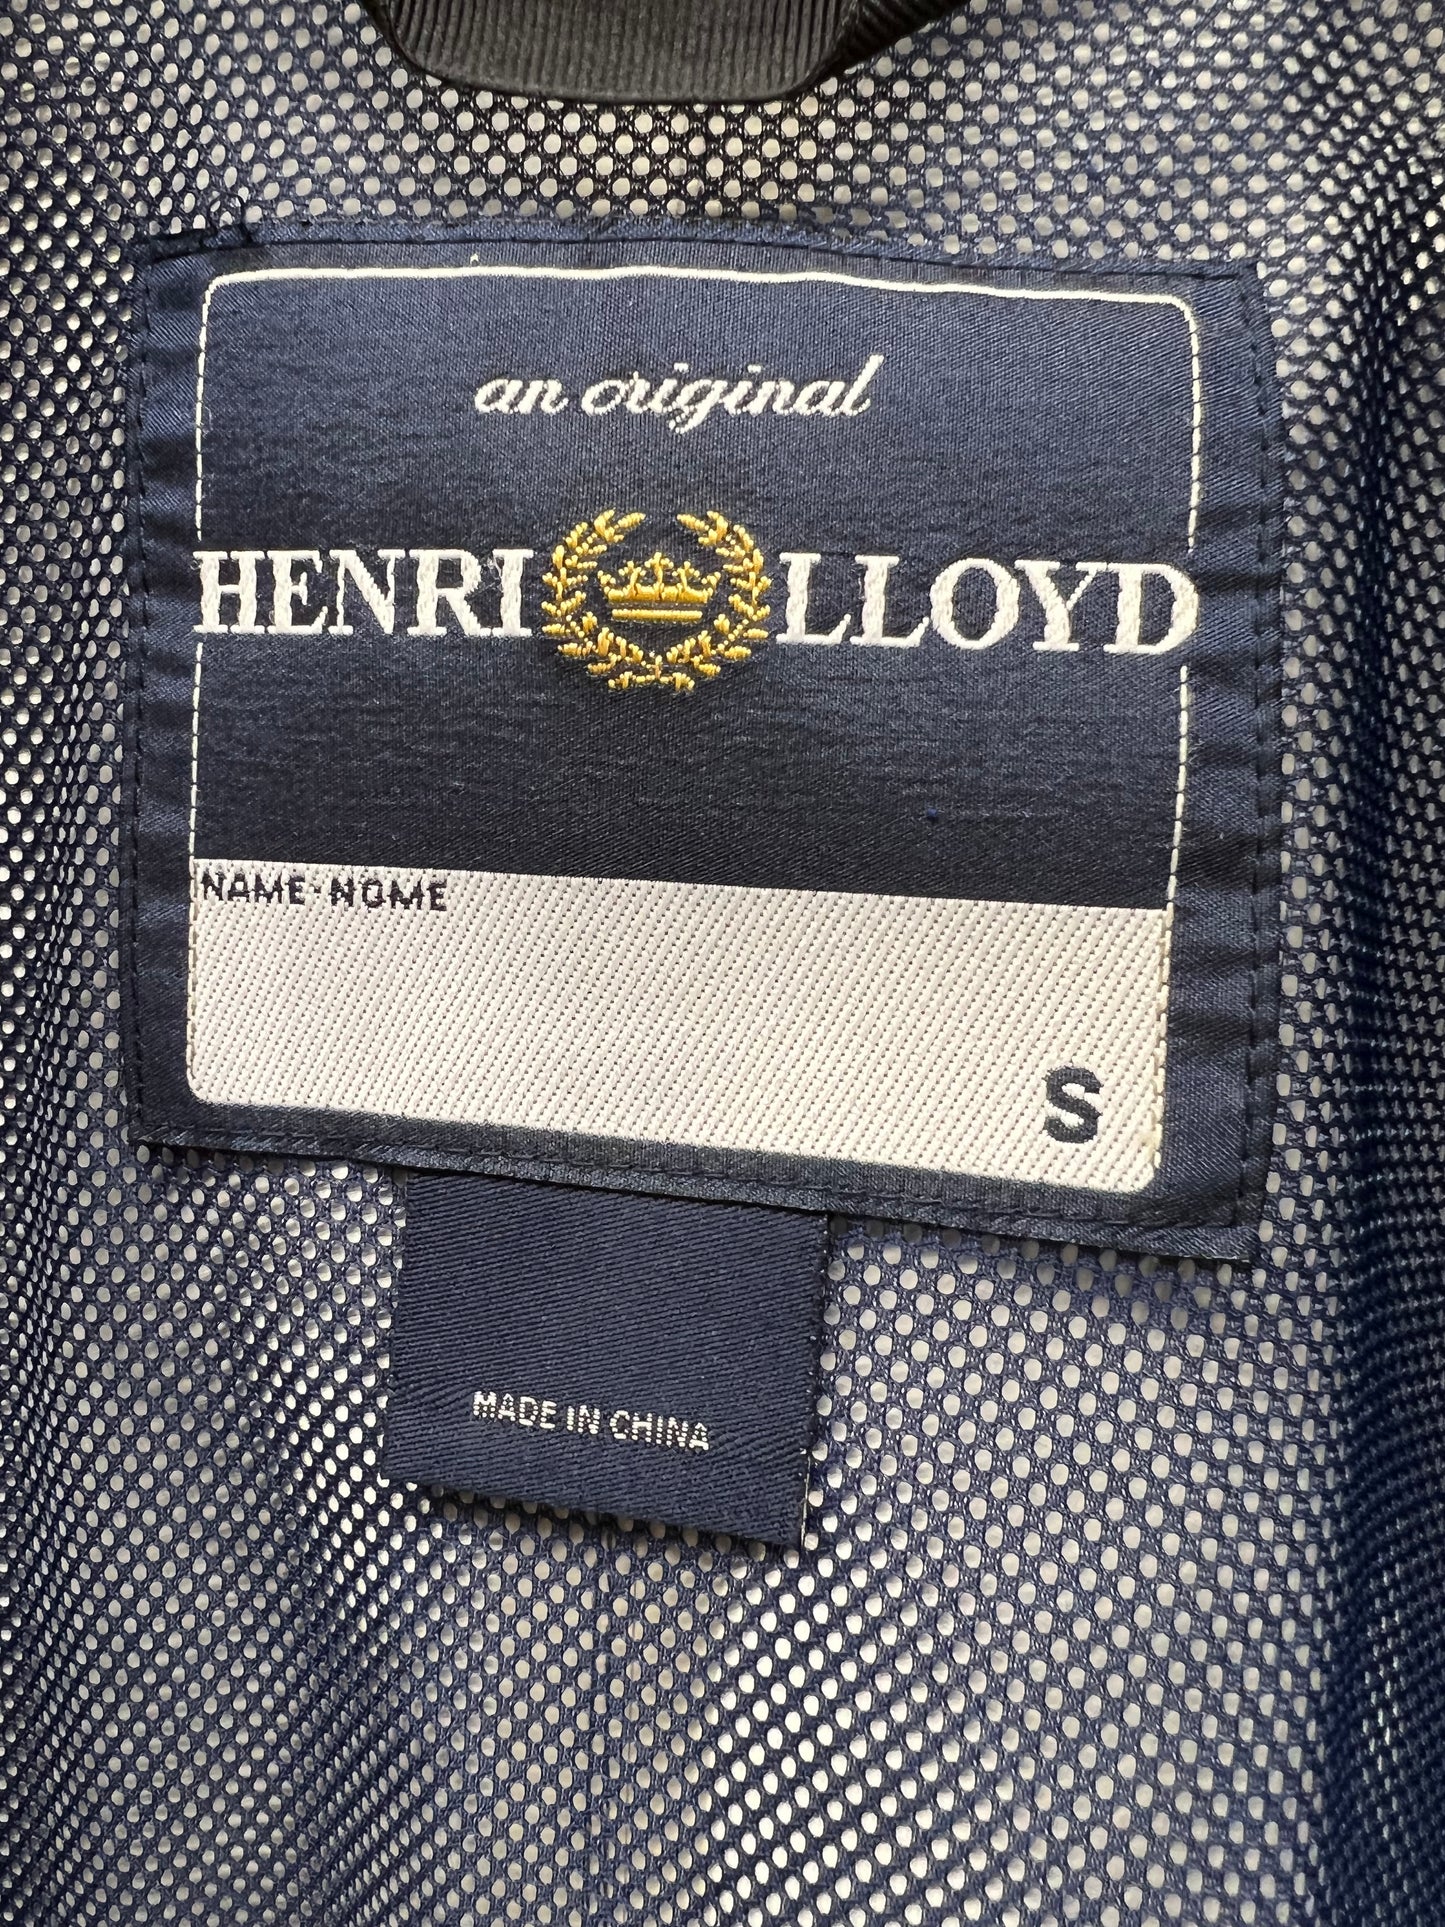 Henri Lloyd Navy Water Resistant Jacket Small